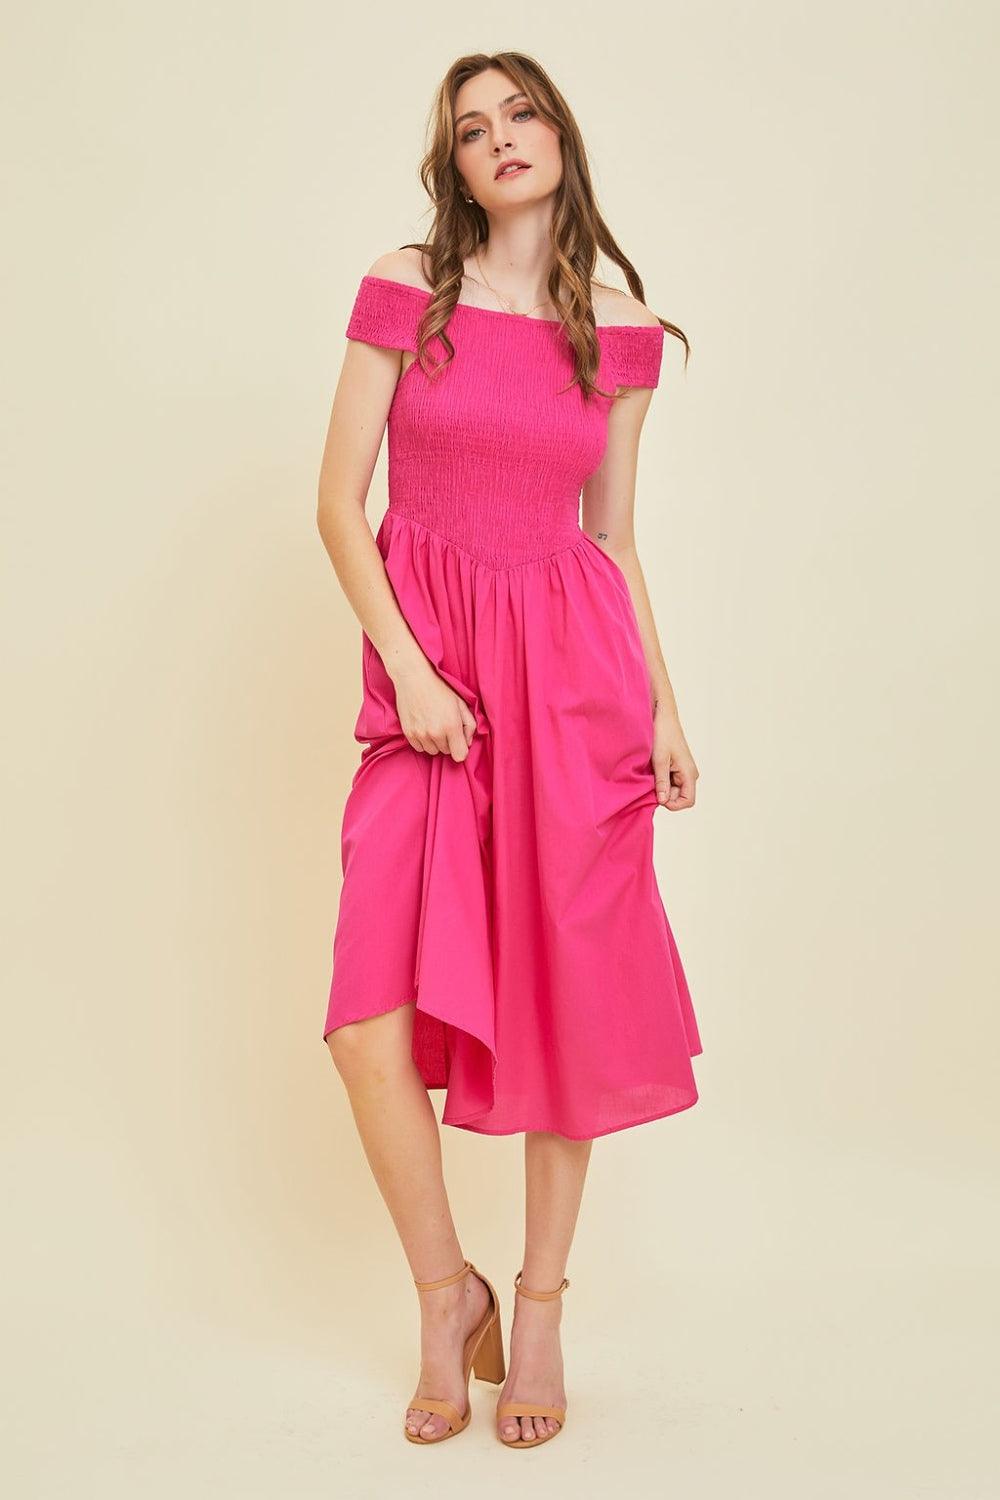 HEYSON Off-Shoulder Smocked Midi Dress - AMIClubwear